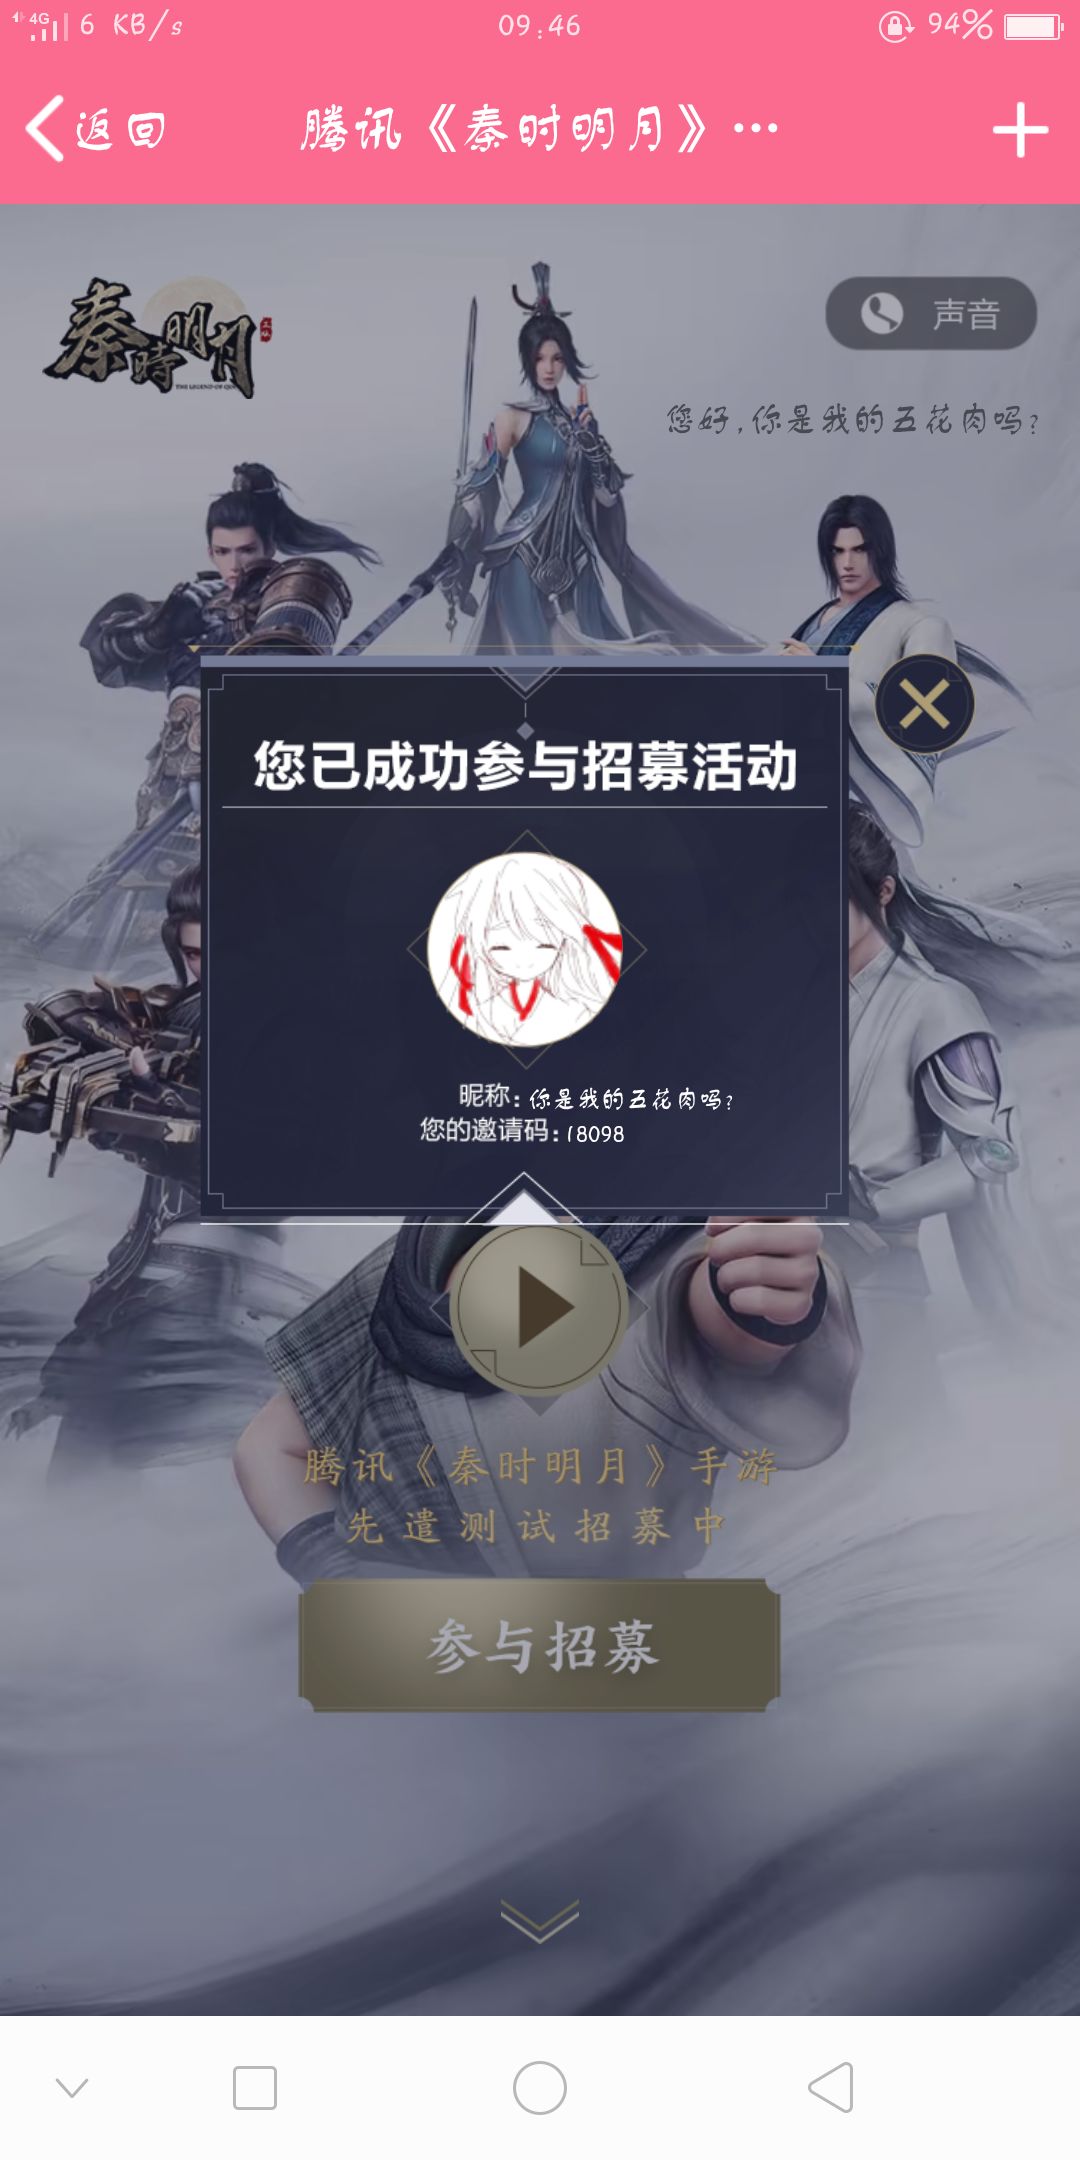 Game hot Tần Thời Minh Nguyệt Mobile chính thức ra mắt trang chủ, hẹn ước đăng ký chuẩn bị mở test